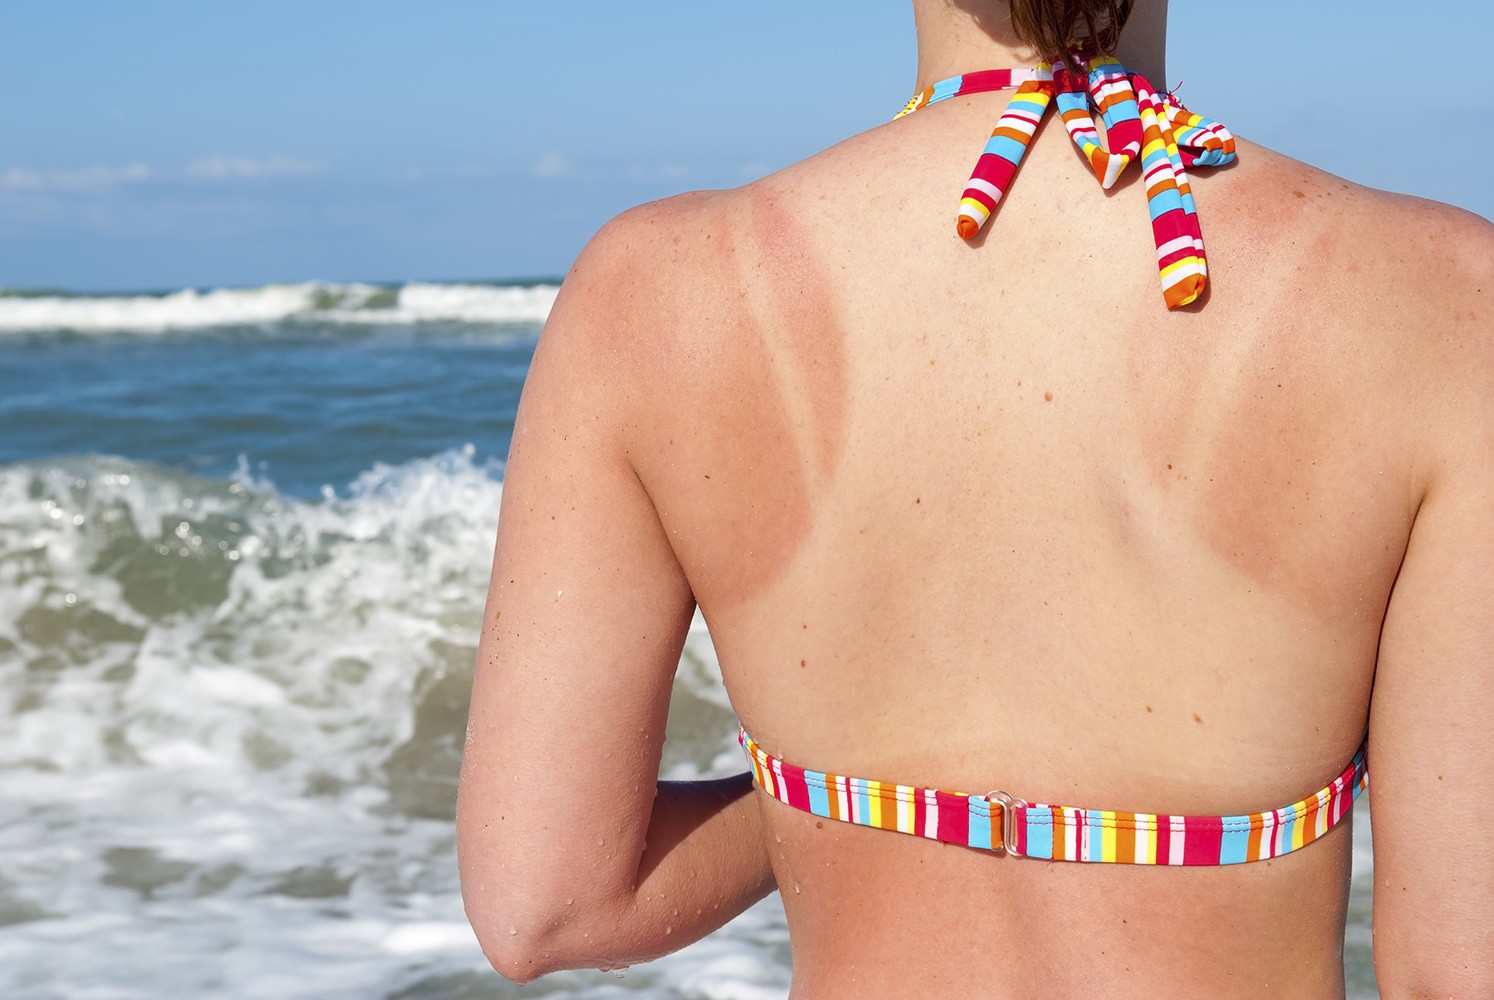 Troppo sole e scottature per un bambino italiano su 4: “Il Sole per amico” rilancia la prevenzione del melanoma